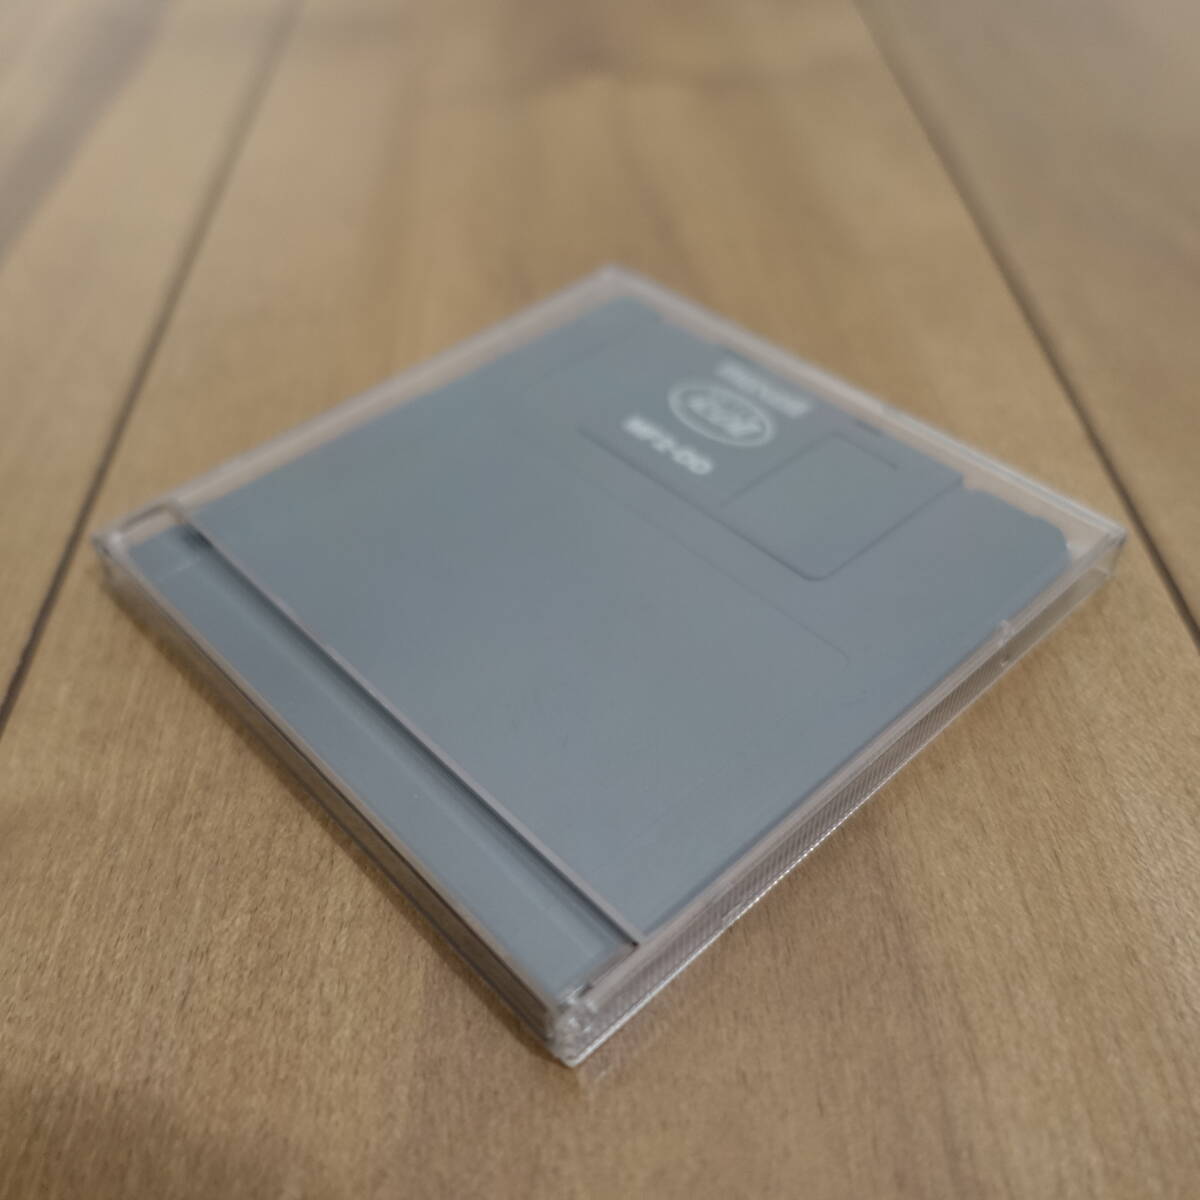  floppy disk 3.5 -inch 2DD maxell SUPER RD Ⅱ MF2-2DD check settled 